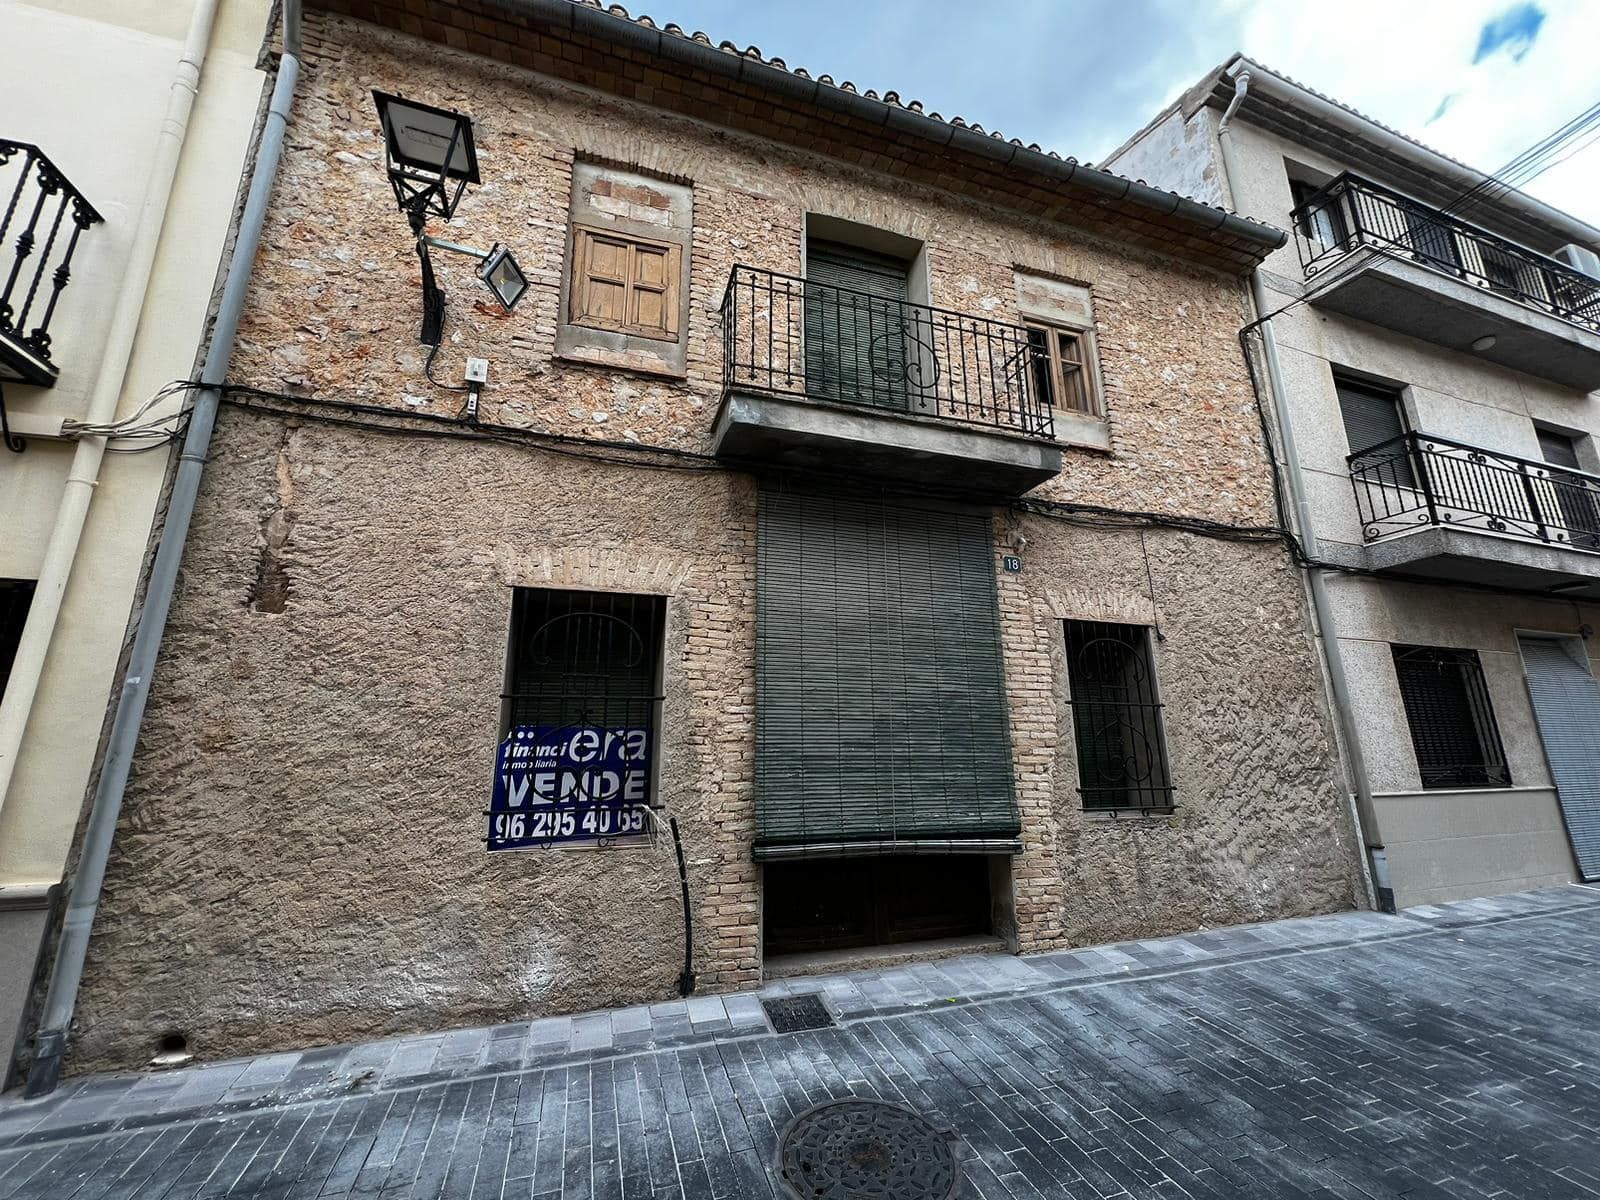 Imagen del inmueble, situado en el número 18 de la calle La Creu, en Almiserà.